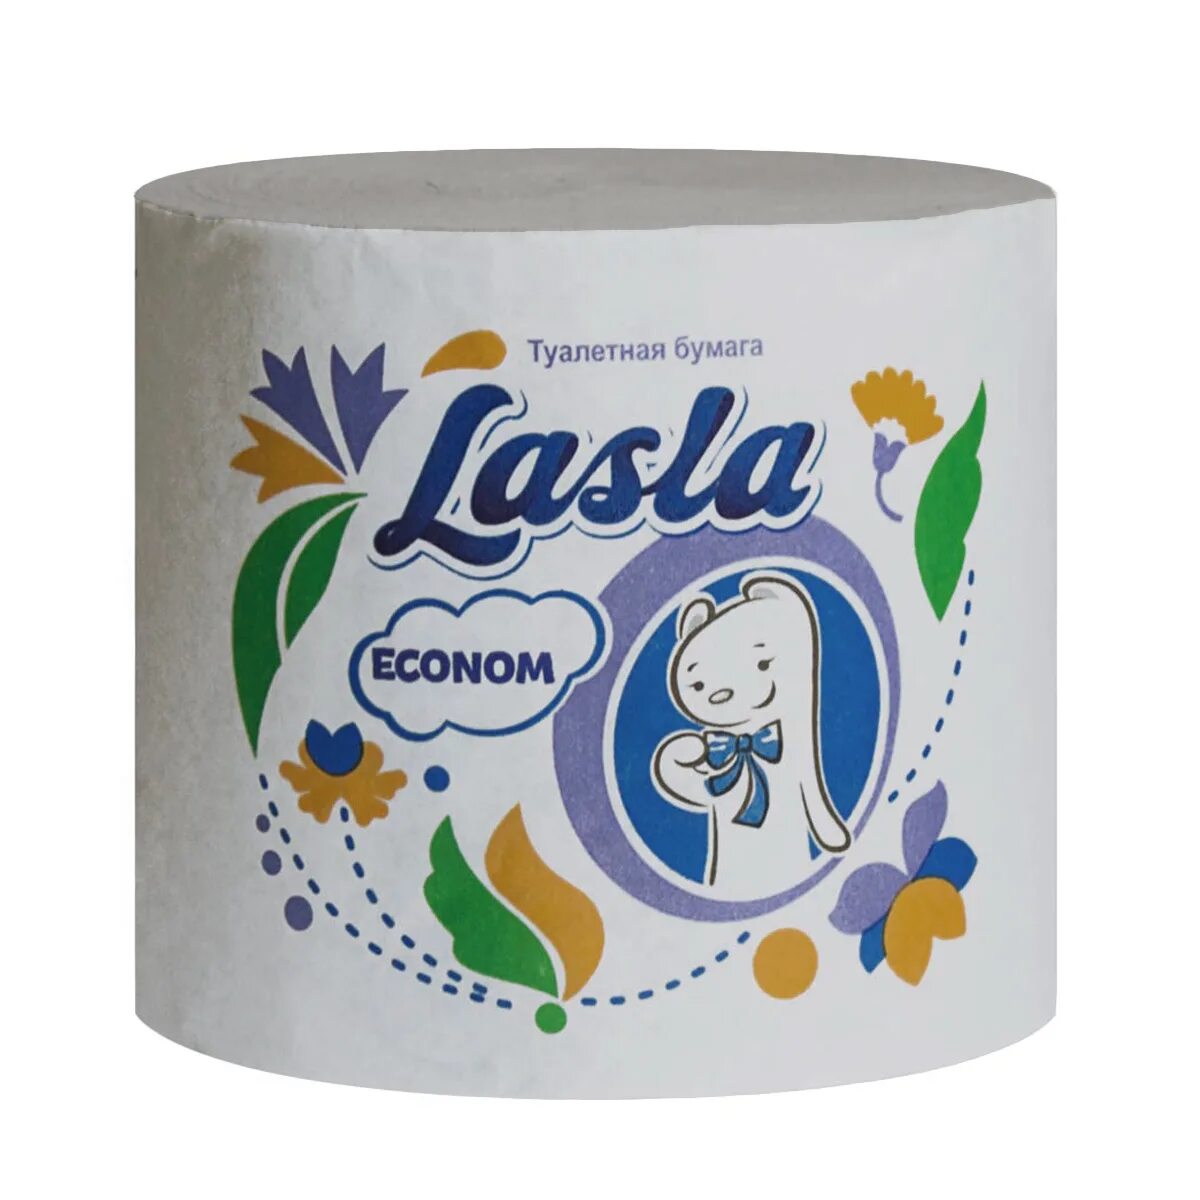 Туалетная бумага Lasla. Туалетная бумага Lasla Econom без втулки м-45. Туалетная бумага Lasla Econom м-45 33 м. Туалетная бумага Ласла эконом.